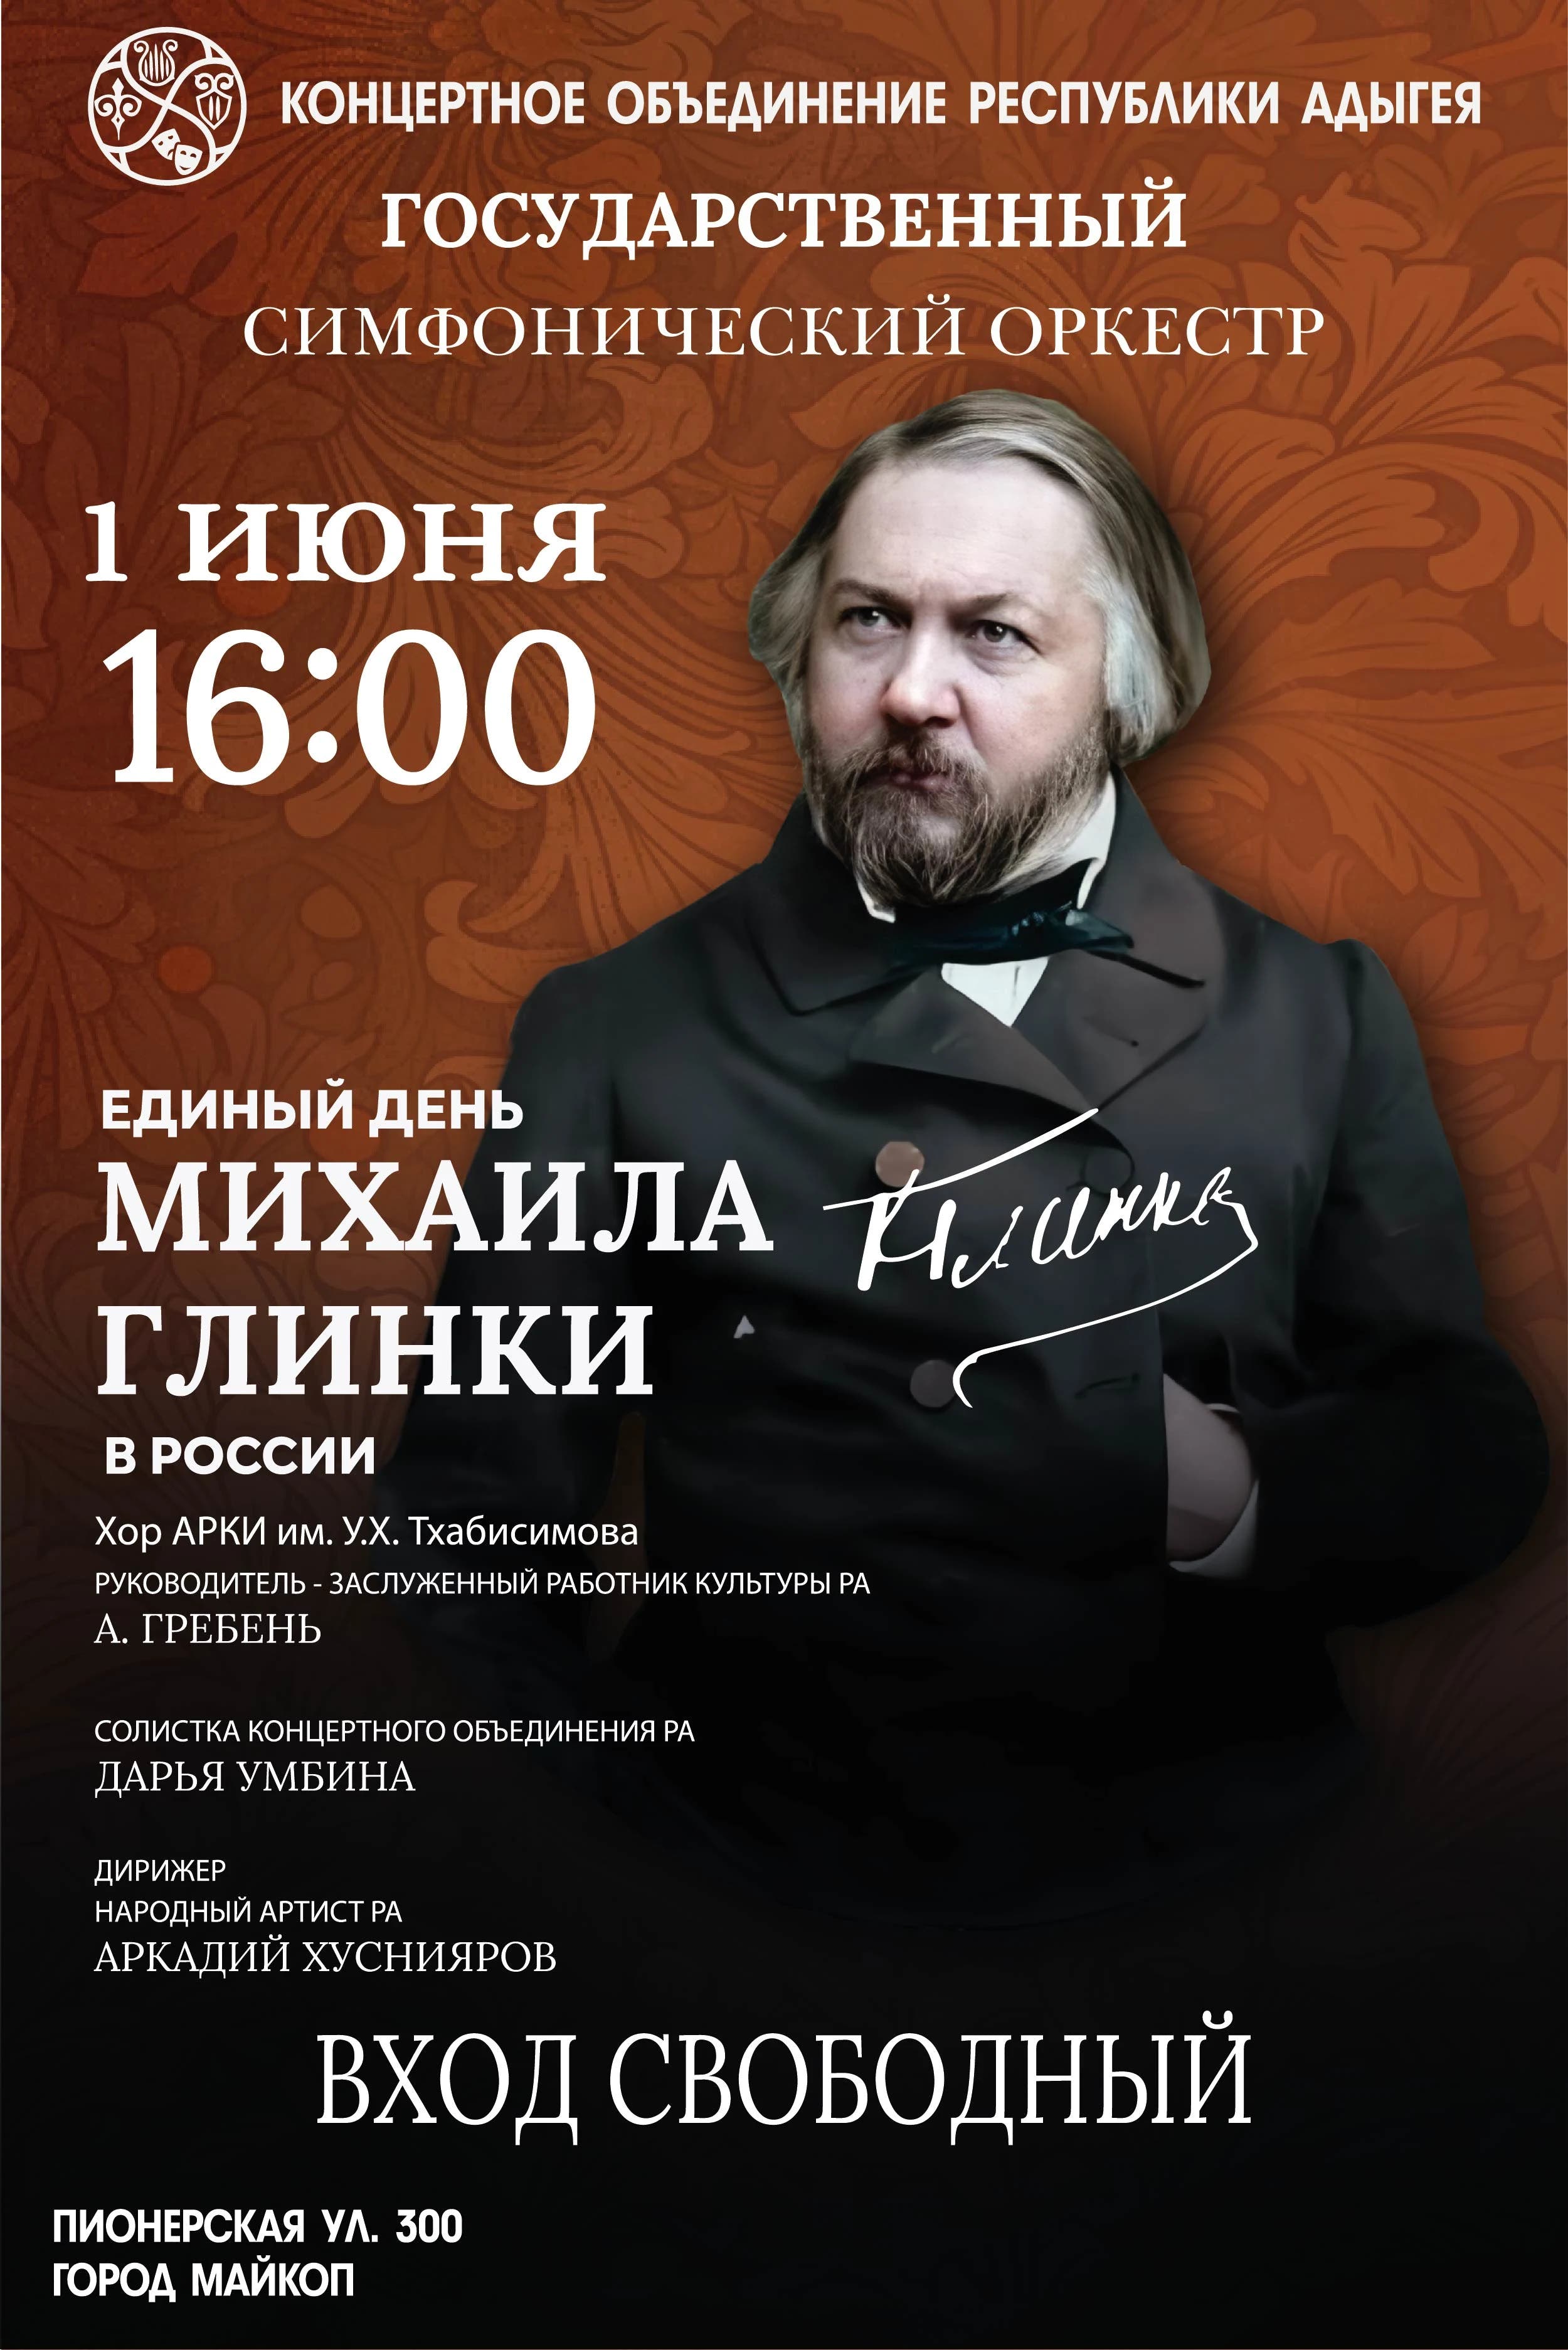 Концерт Государственный симфонический оркестр, Единый день М.И. Глинки в России